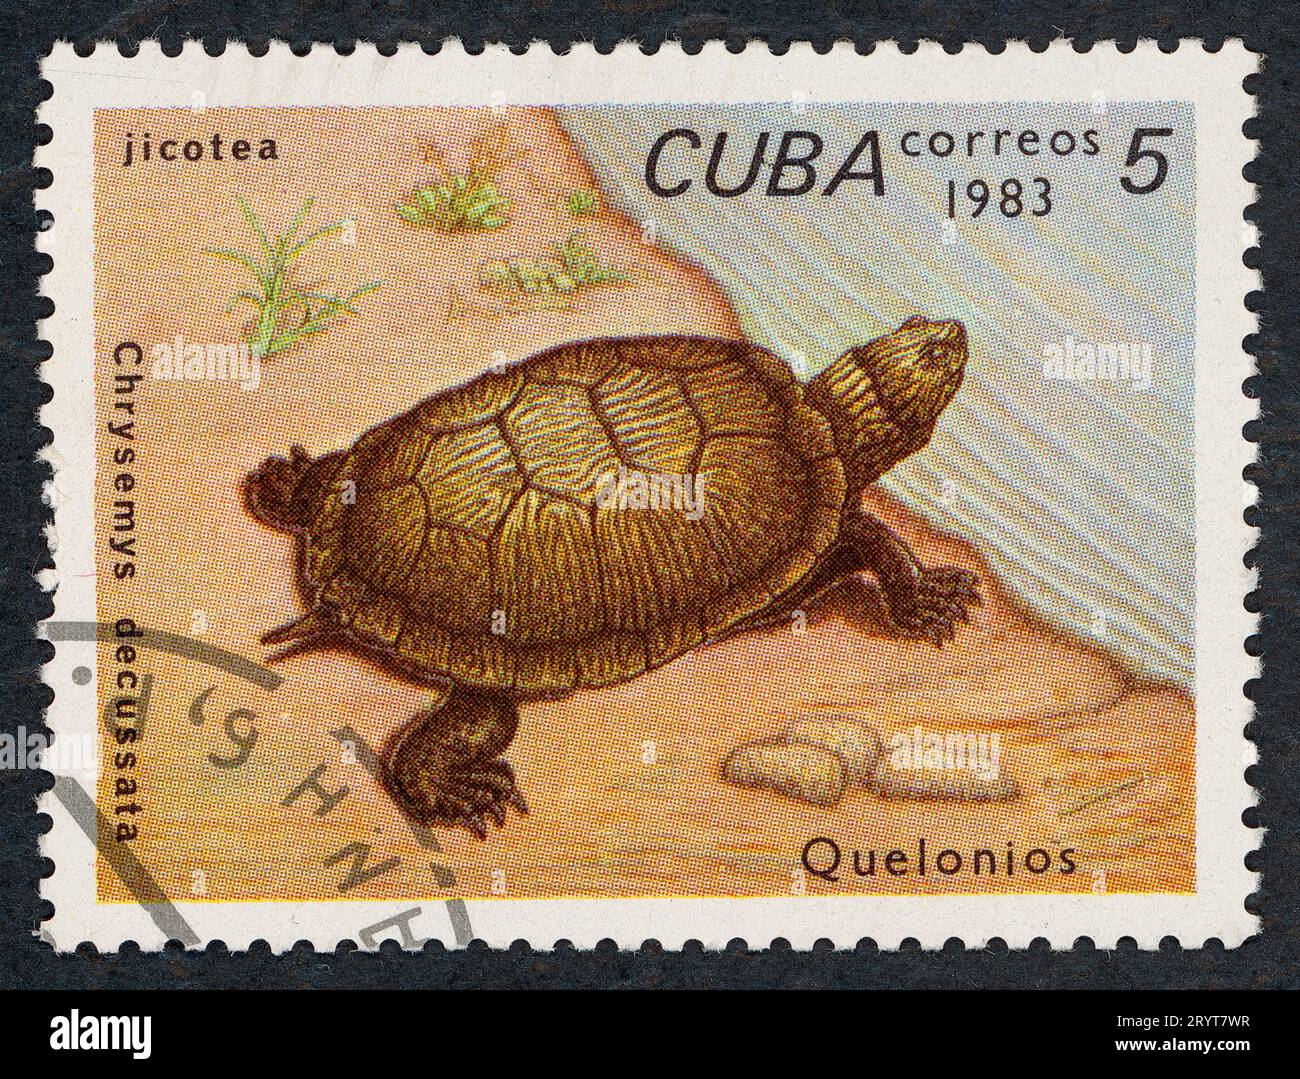 Il cursore cubano (Trachemys decussata, anche Chrysemys decussata). "Quelonios" - Tartarughe. Francobollo emesso a Cuba nel 1983. Foto Stock